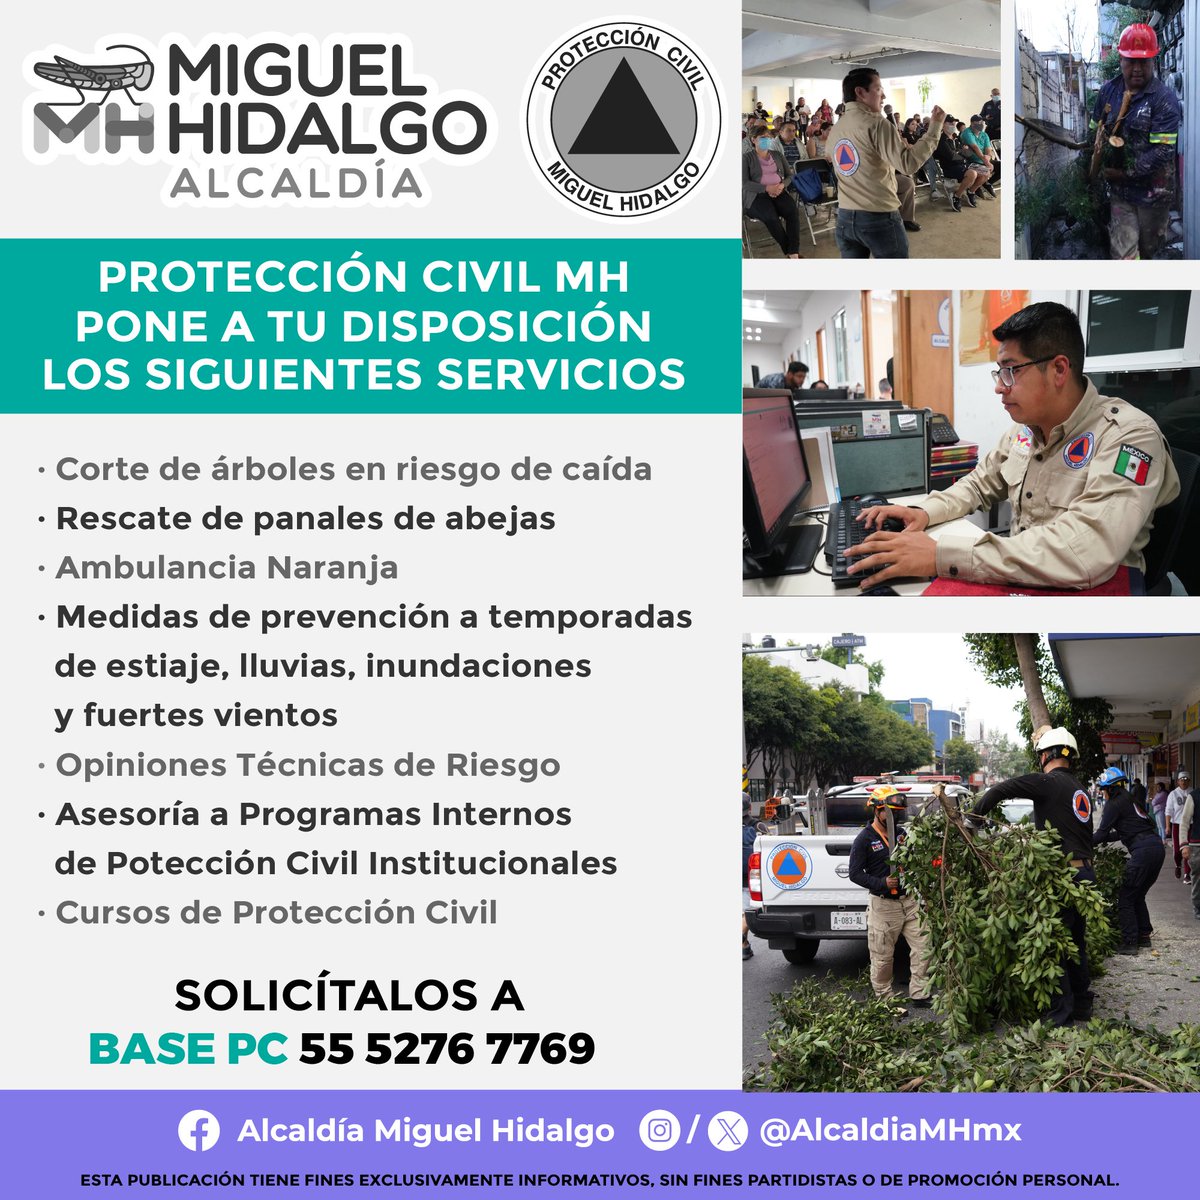 ¿Conoces todos los servicios que ofrece el equipo de @MHPrevencion para ti? Solicita cualquiera de ellos llamando a Base Fénix o a través de nuestro #MiércolesCiudadano. #PrevenciónMH⚠️